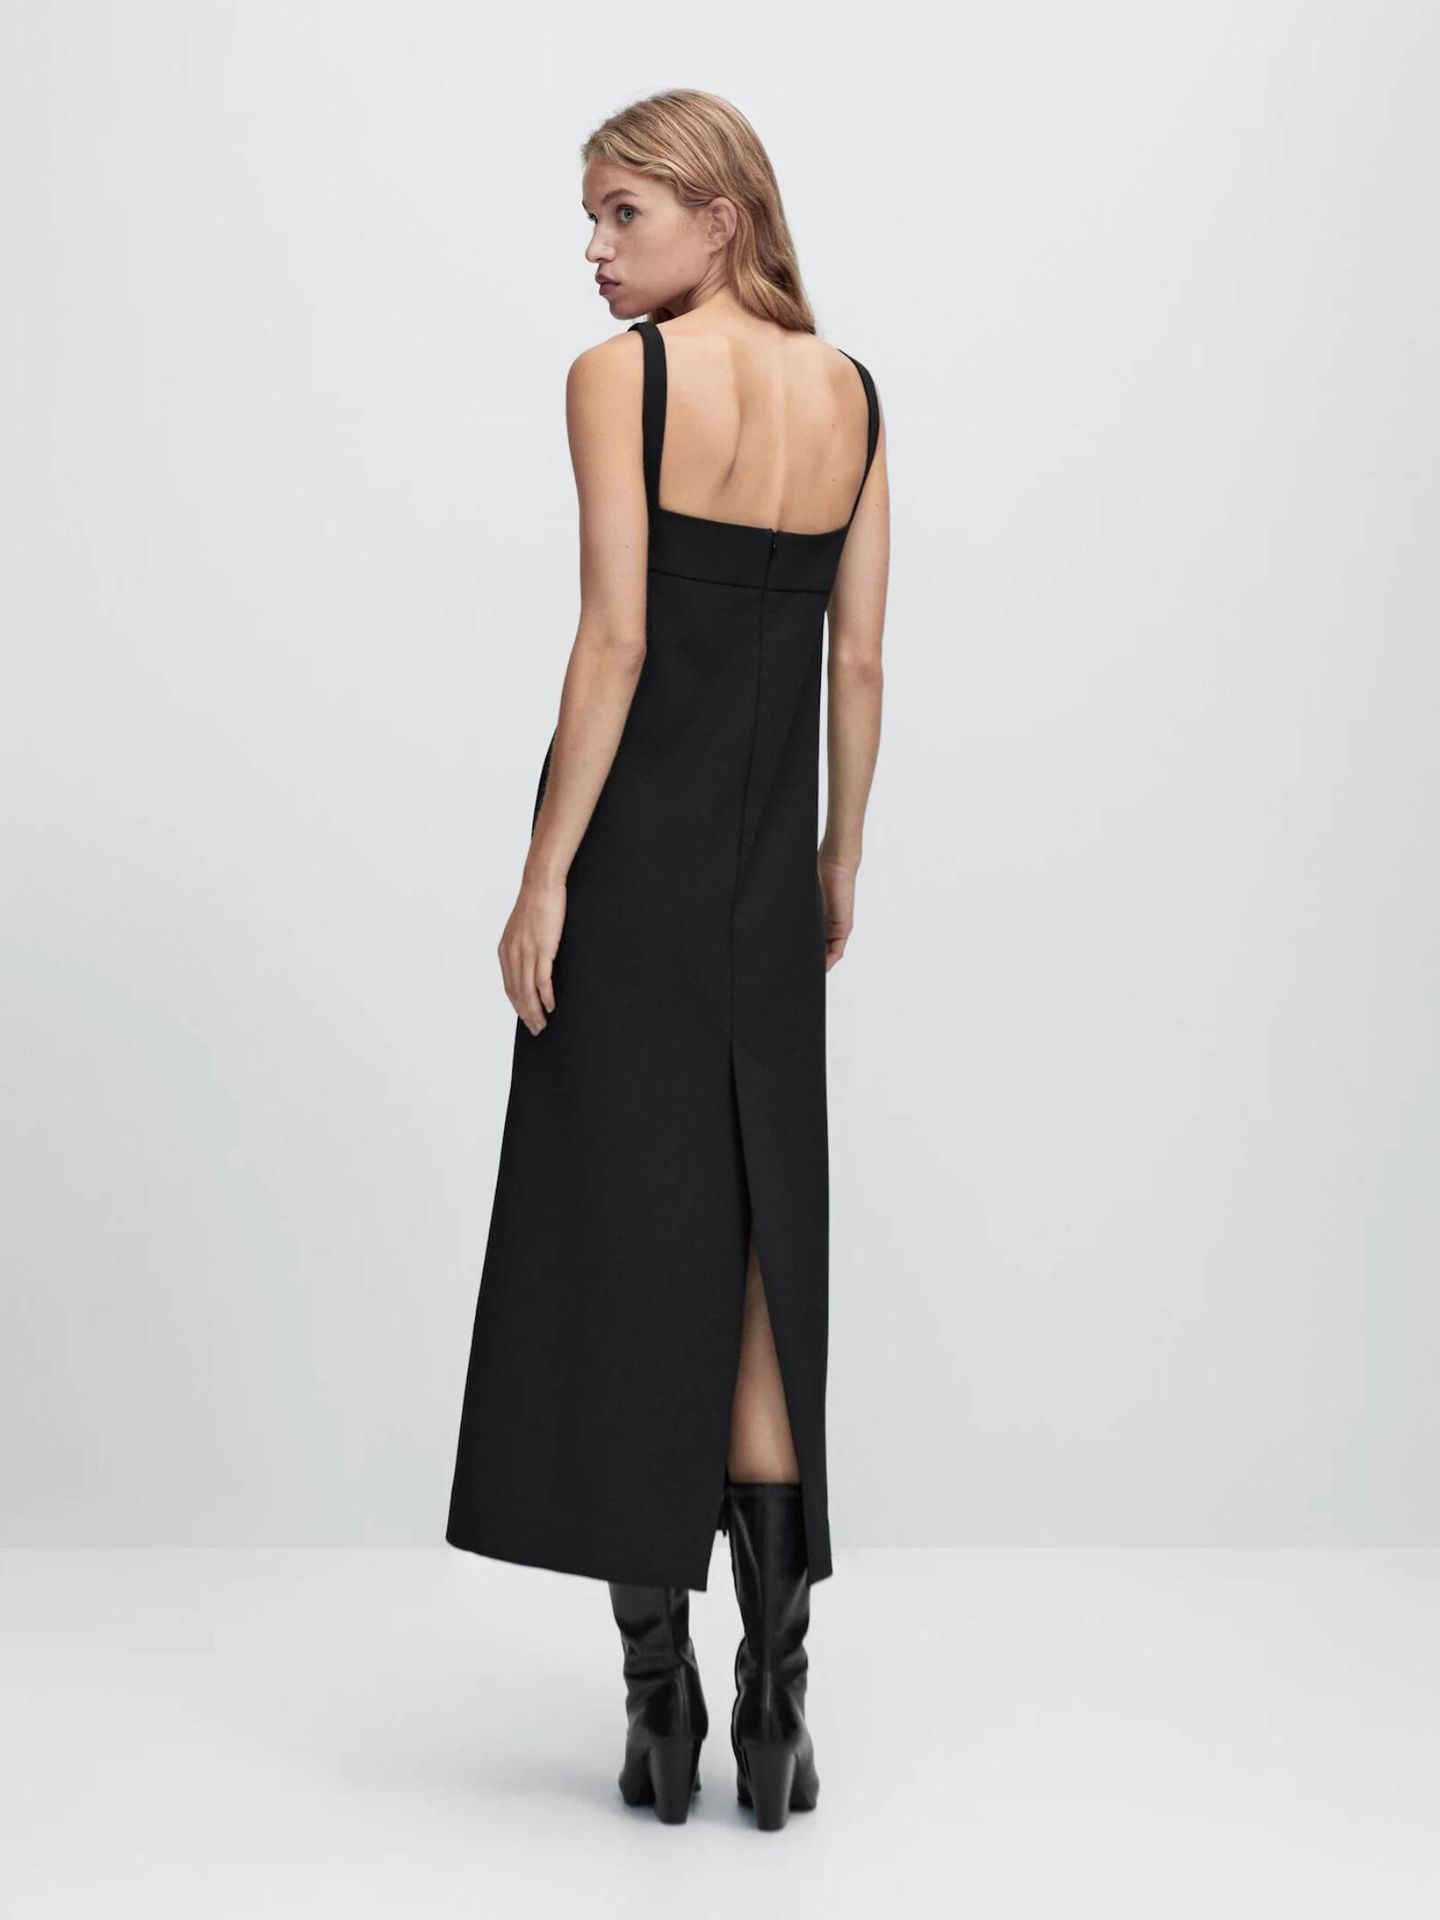 Elige tu vestido negro perfecto en las novedades de Massimo Dutti. (Cortesía)